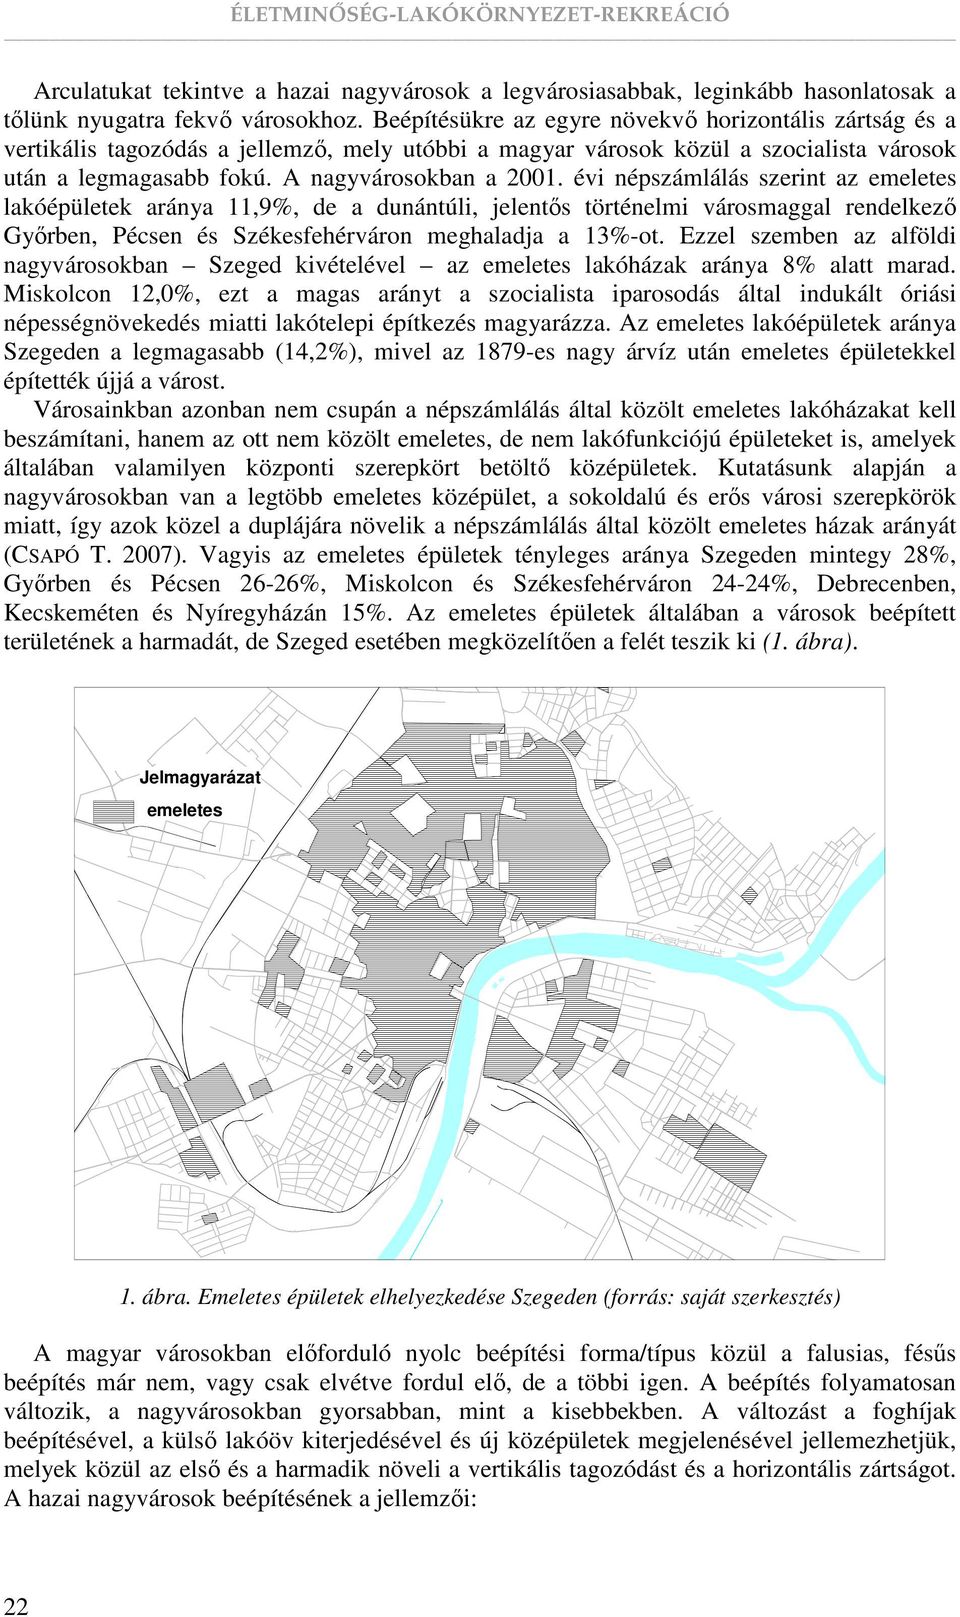 évi népszámlálás szerint az emeletes lakóépületek aránya 11,9%, de a dunántúli, jelentıs történelmi városmaggal rendelkezı Gyırben, Pécsen és Székesfehérváron meghaladja a 13%-ot.